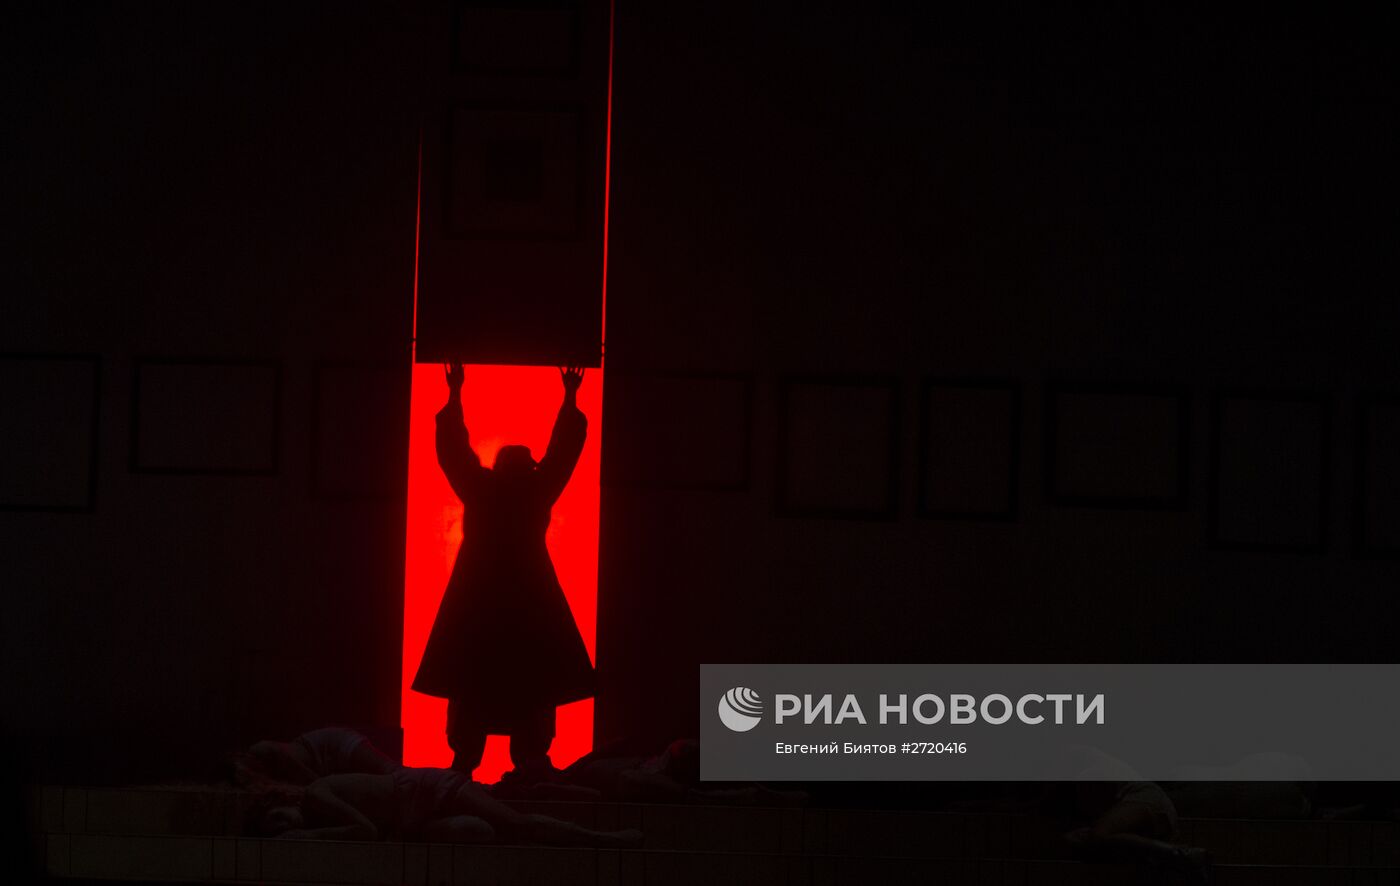 Прогон спектакля "Яма" в постановке Егора Дружинина